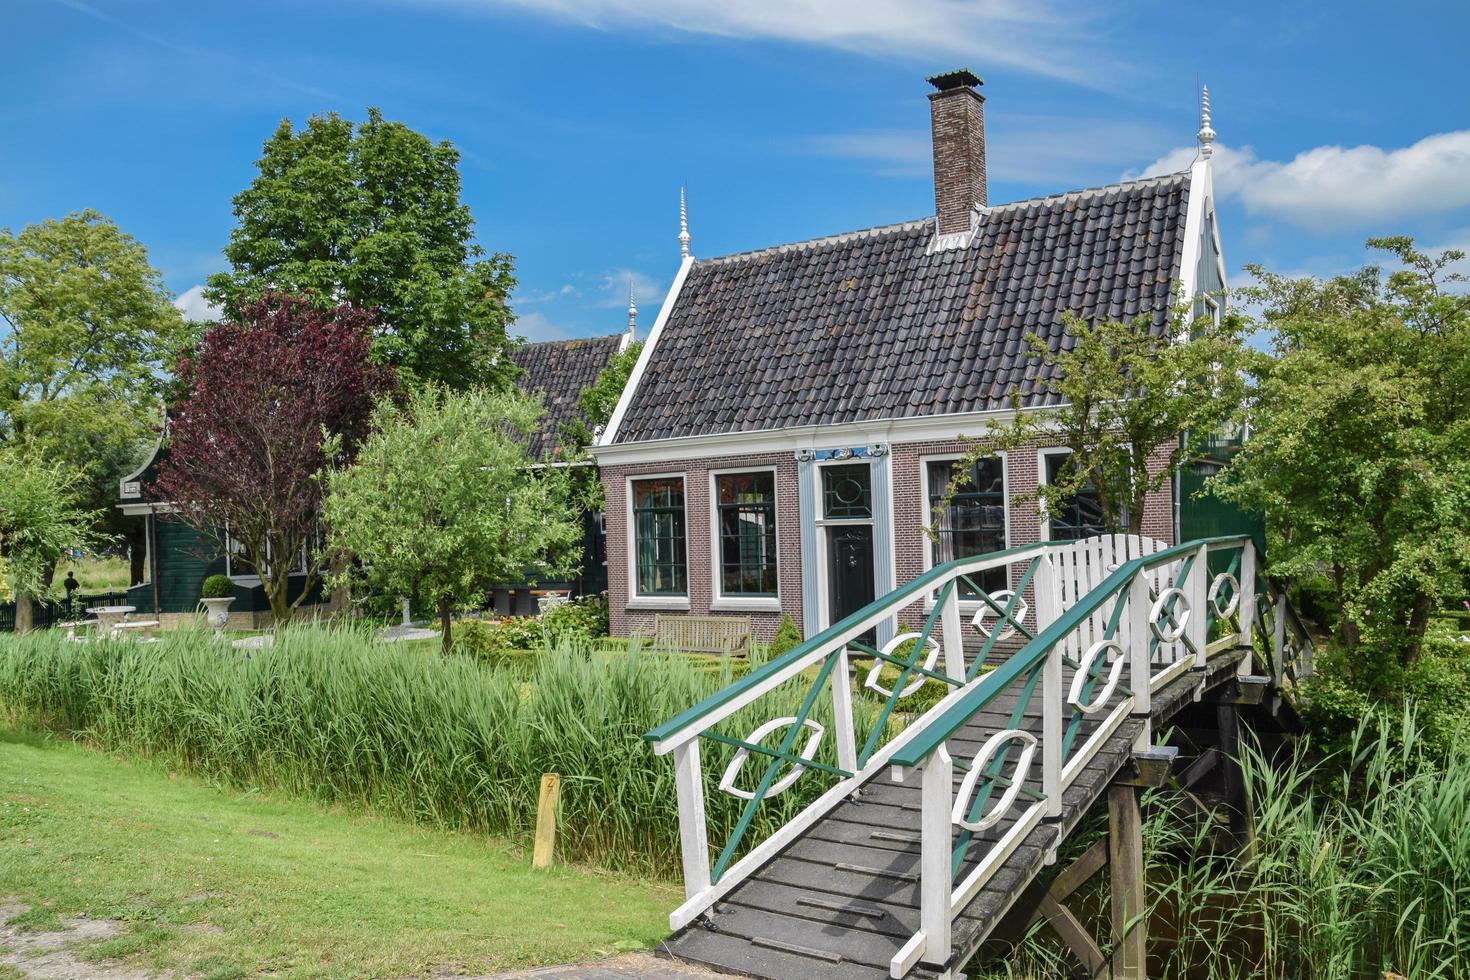 casa tradizionale a Zaanse Schans, Paesi Bassi, il 19 giugno 2016 foto